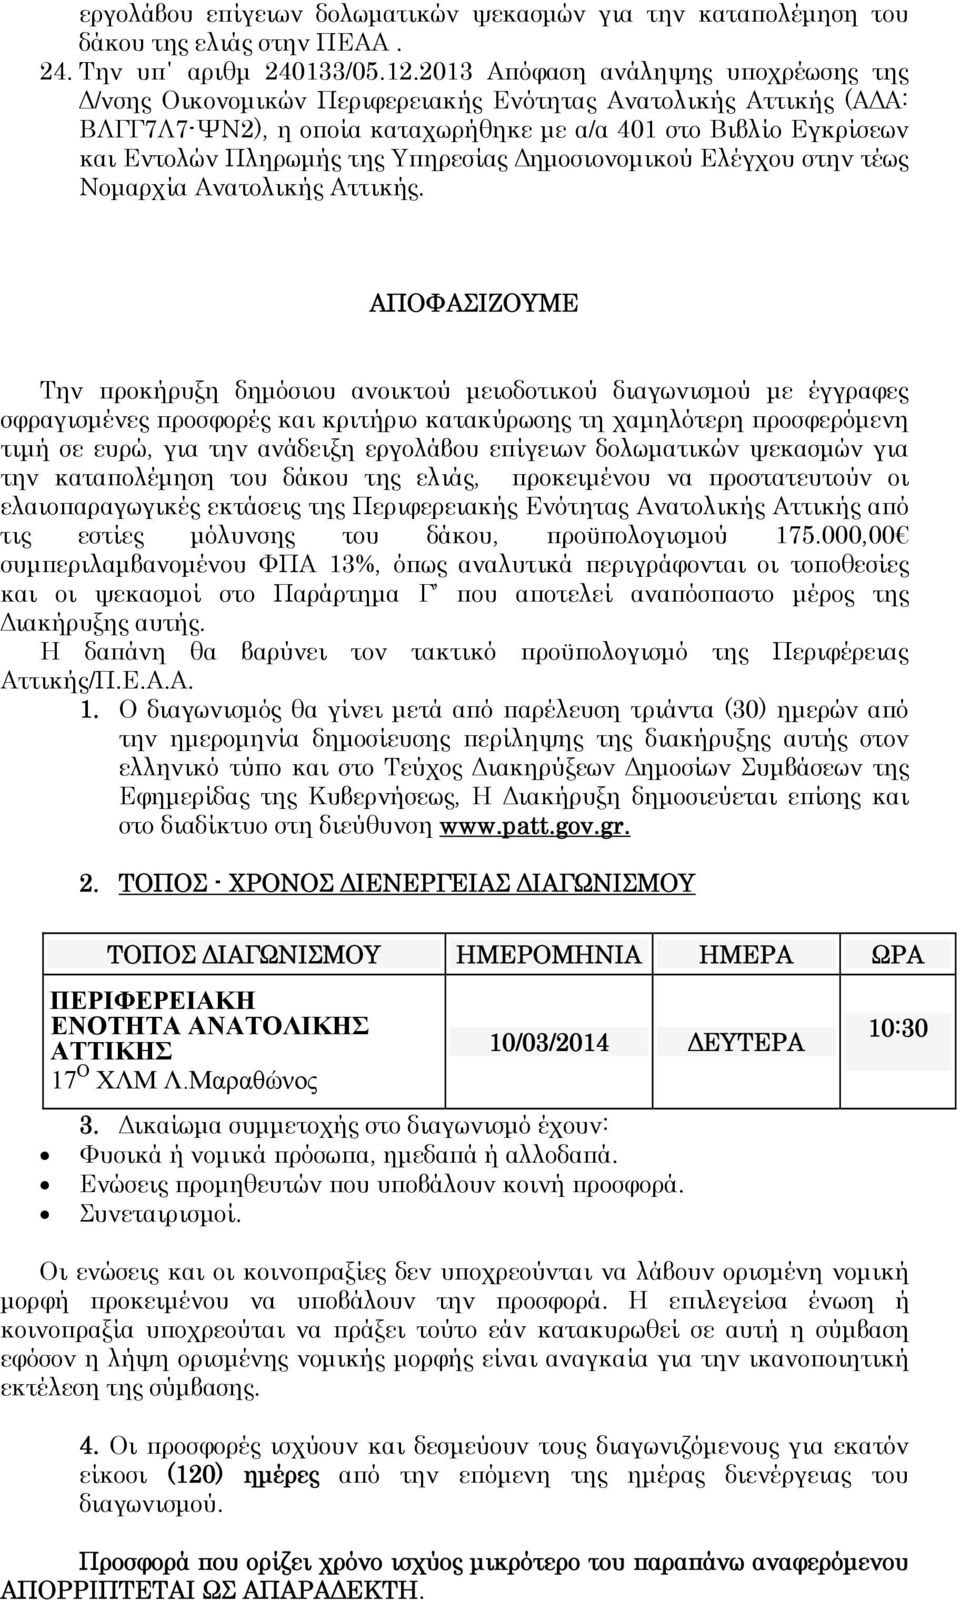 Υπηρεσίας Δημοσιονομικού Ελέγχου στην τέως Νομαρχία Ανατολικής Αττικής.